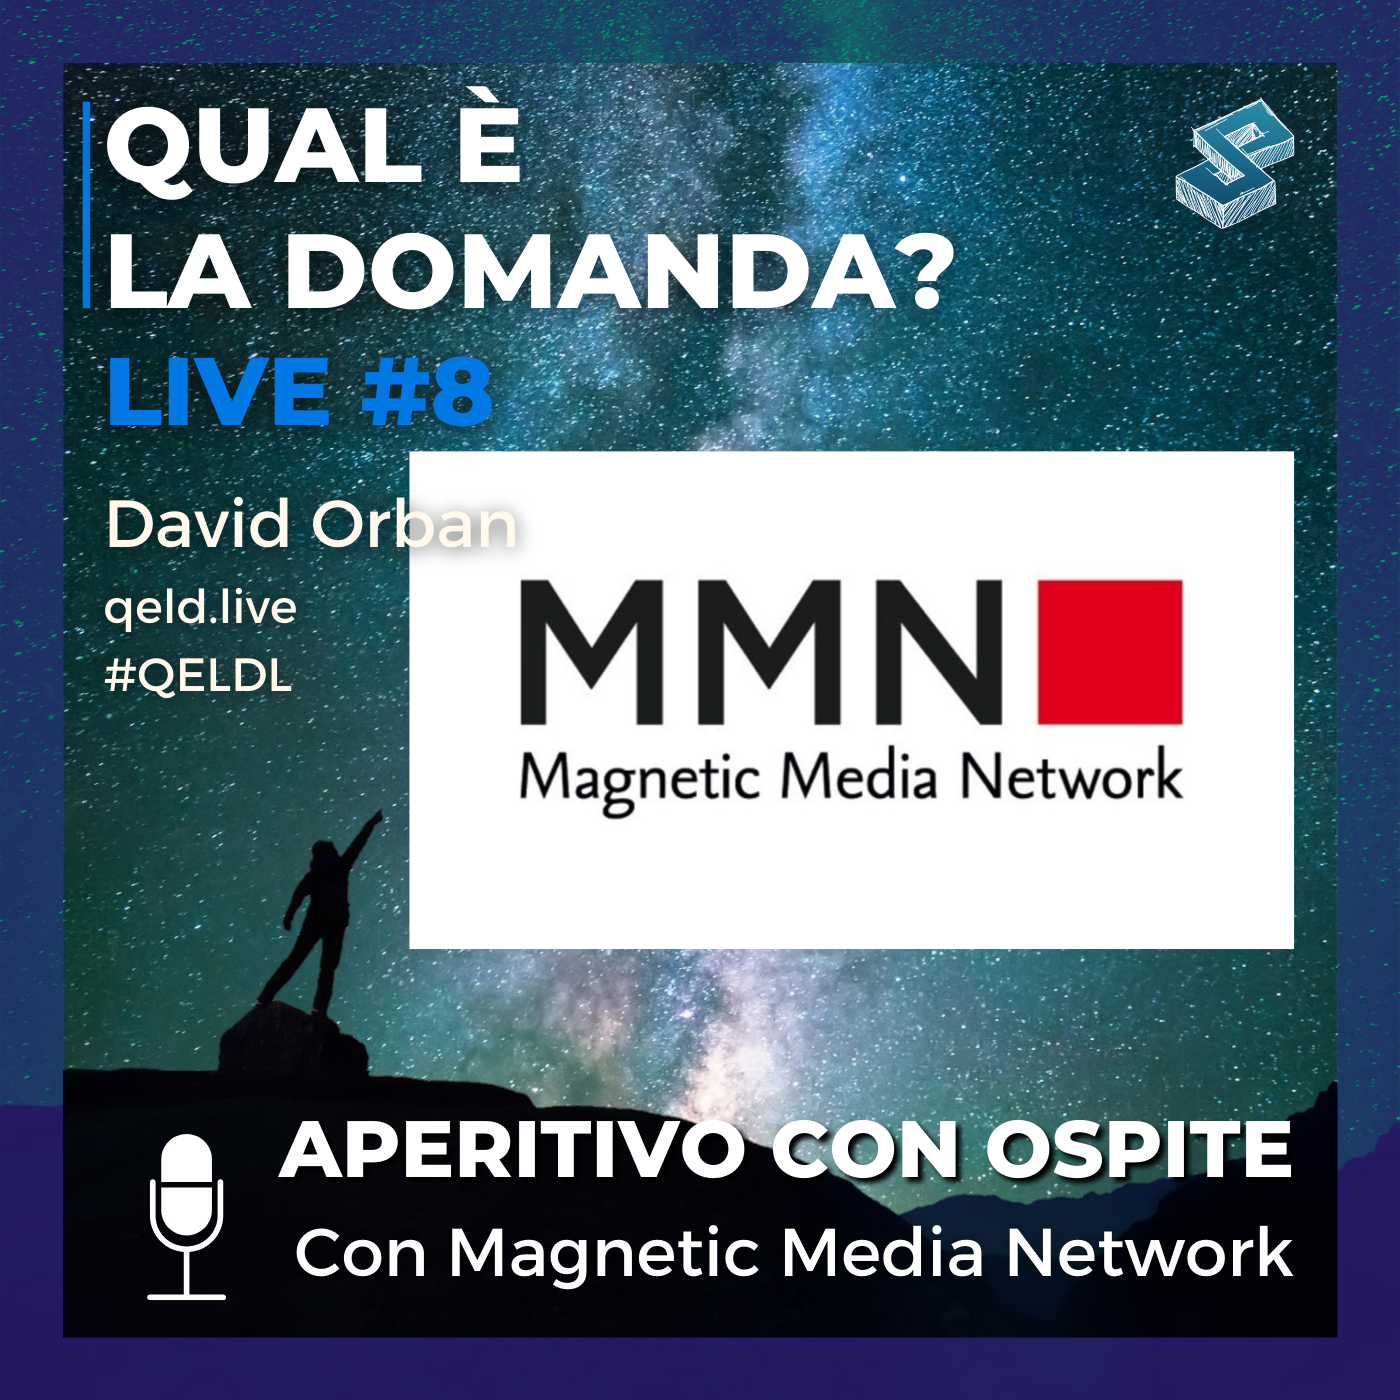 Aperitivo con ospite con Magnetic Media Network - QELDL #8